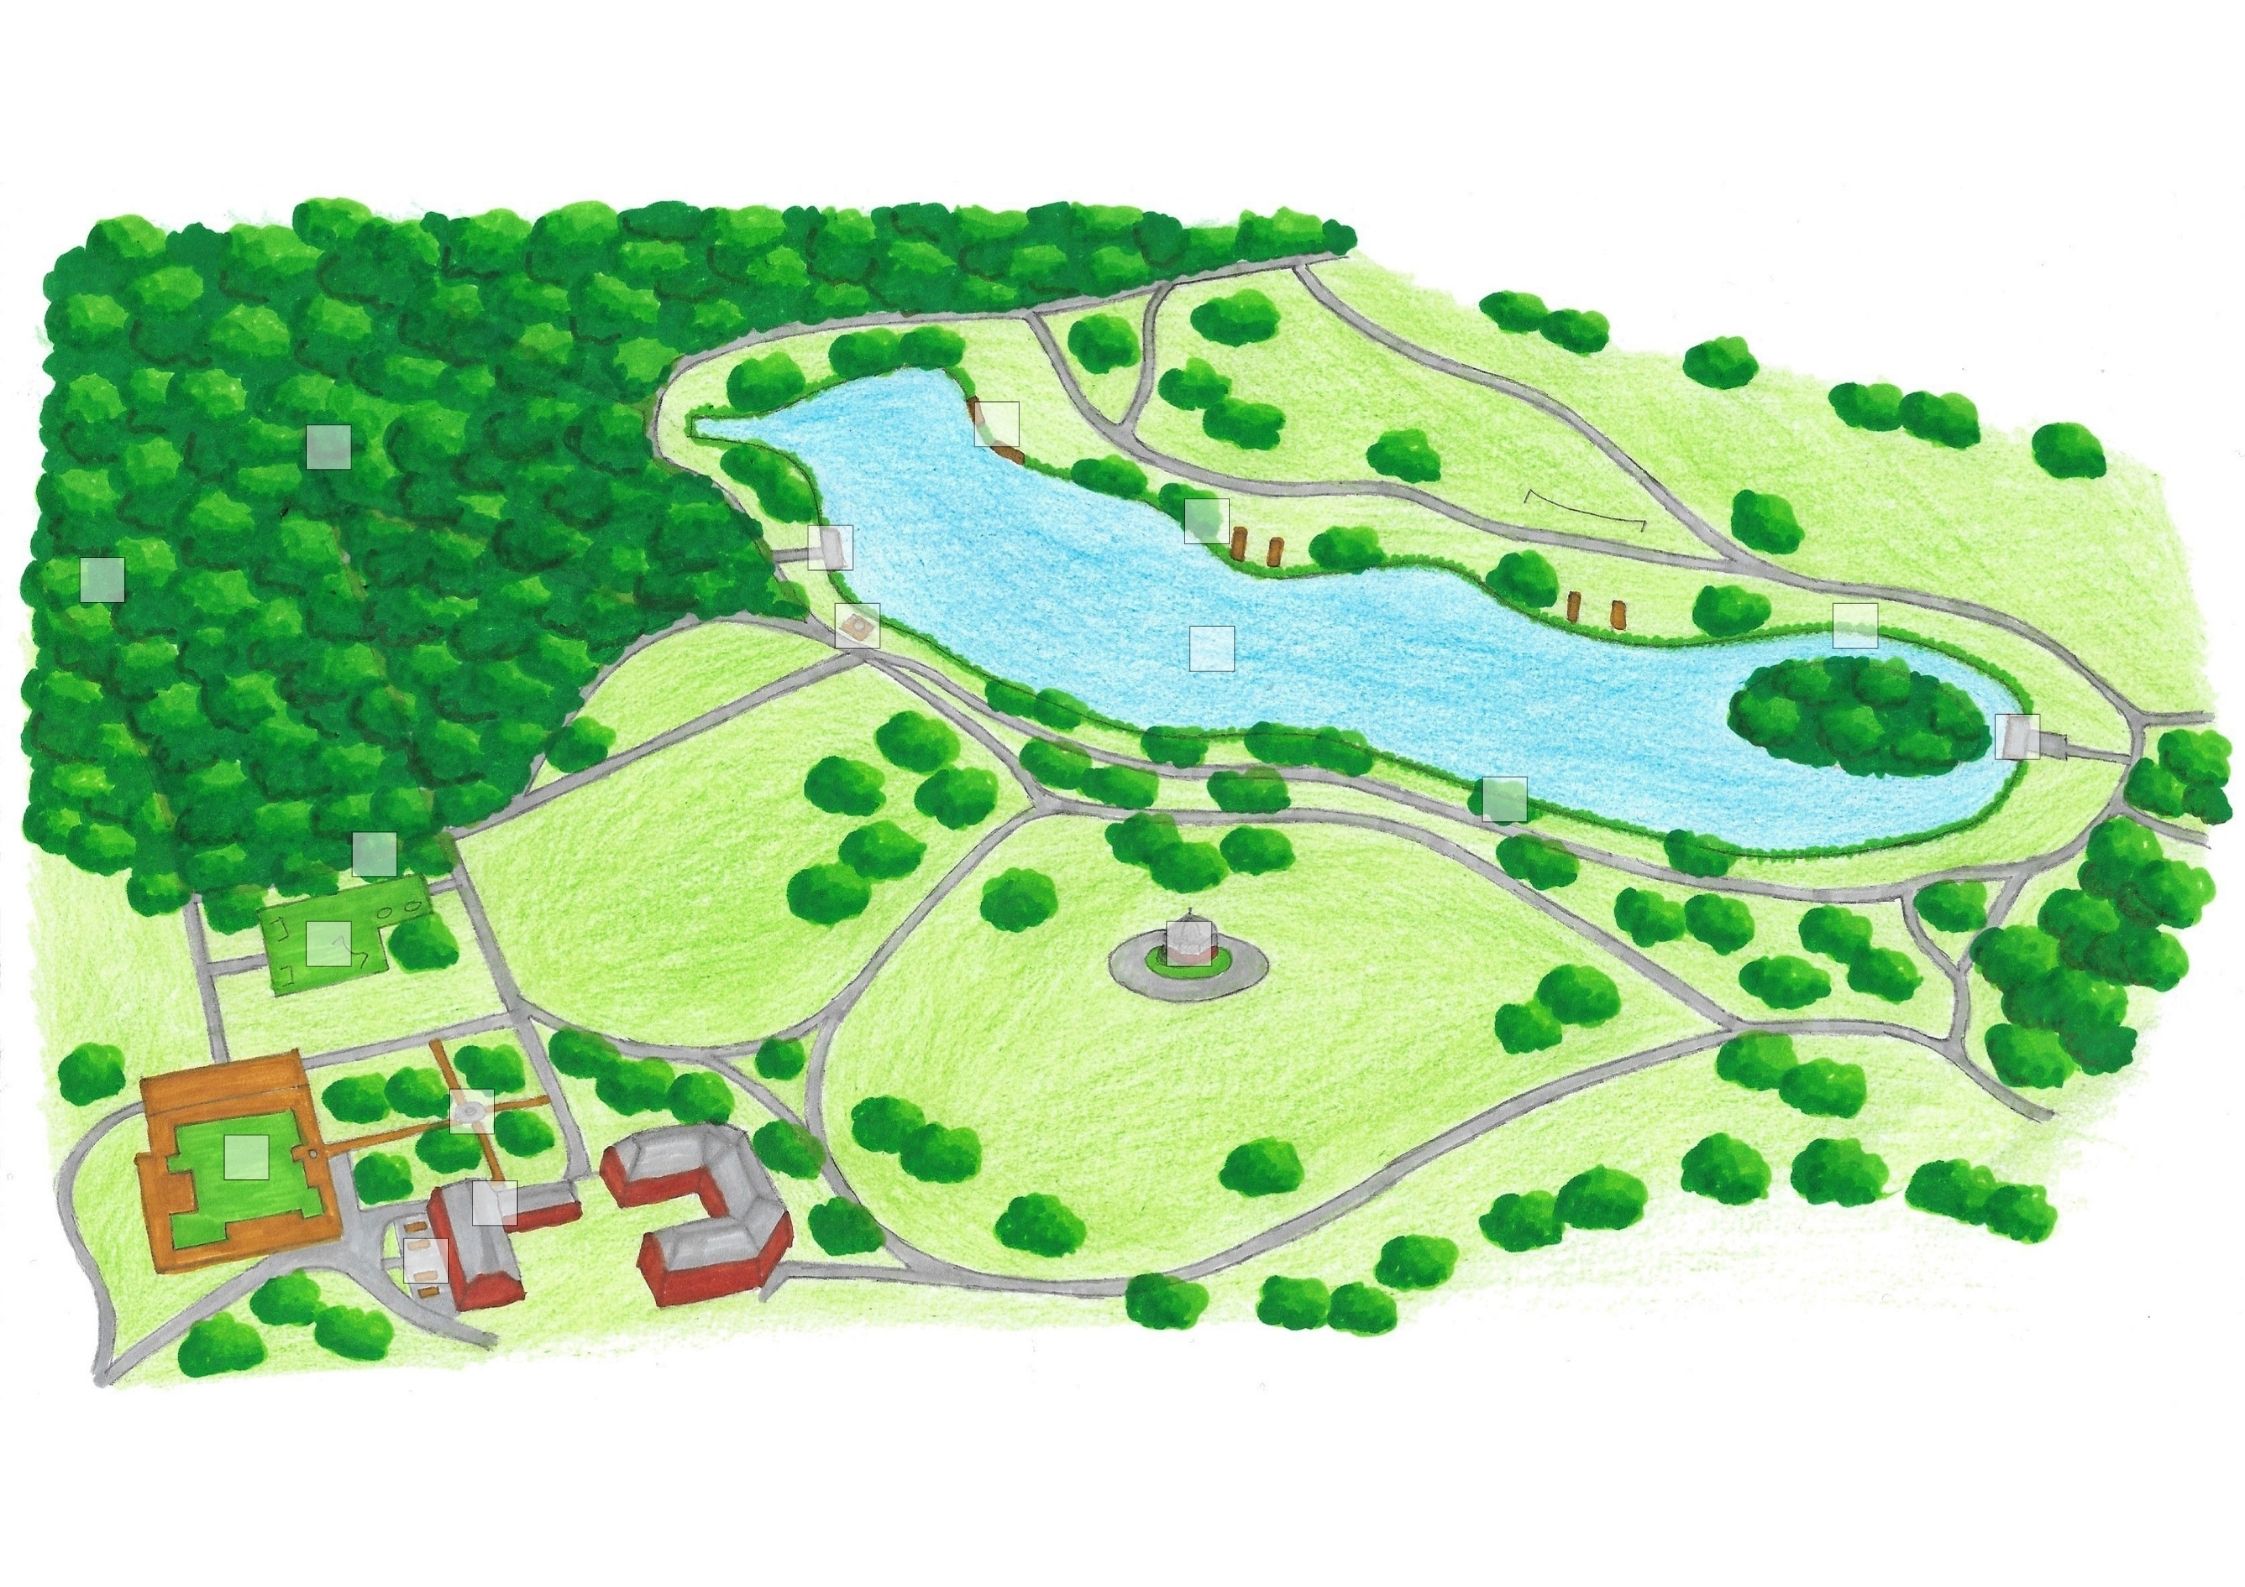 Boultham Park Digital Map